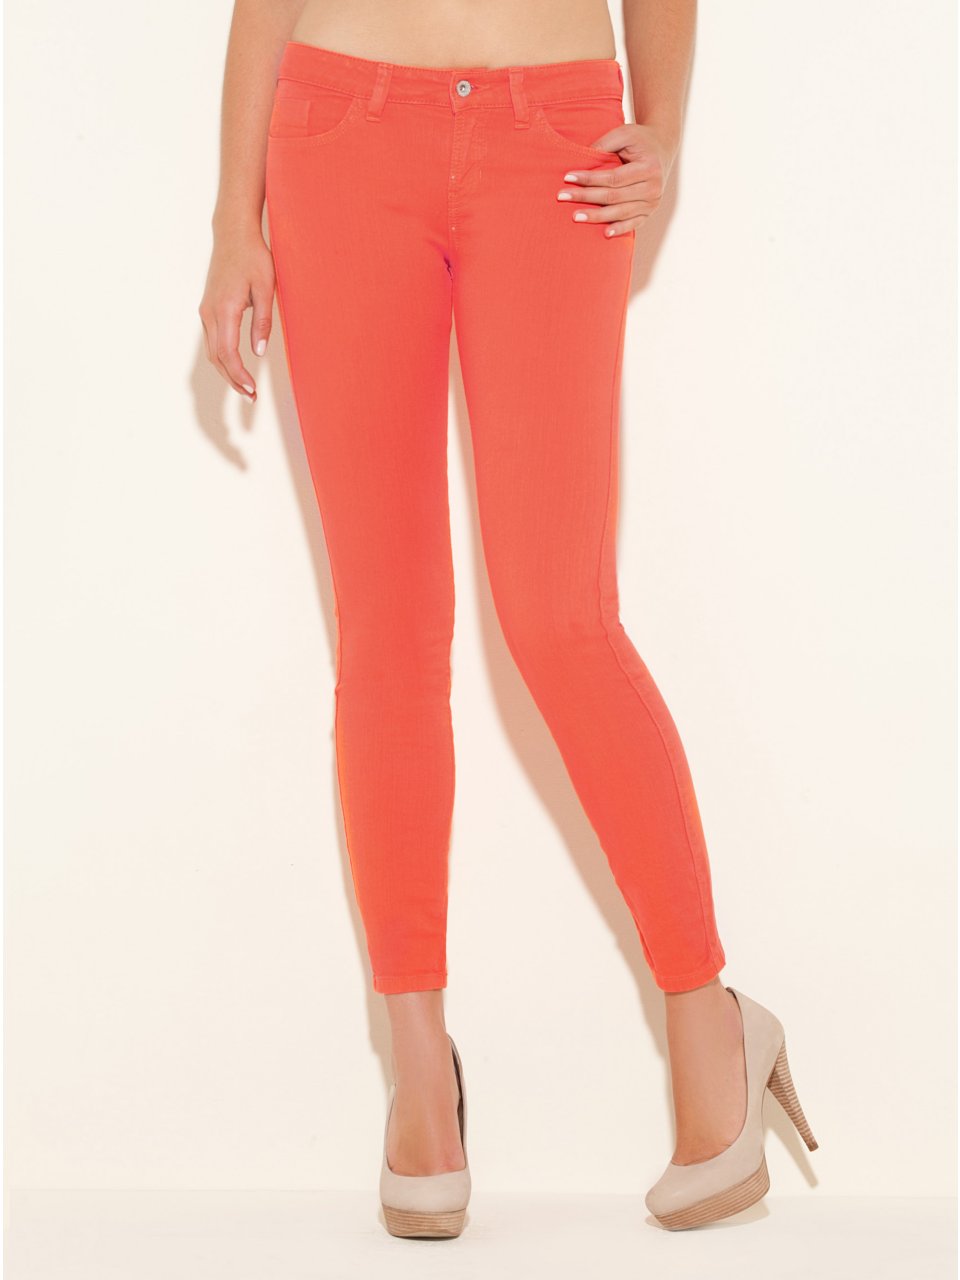 Orange skinny jeans